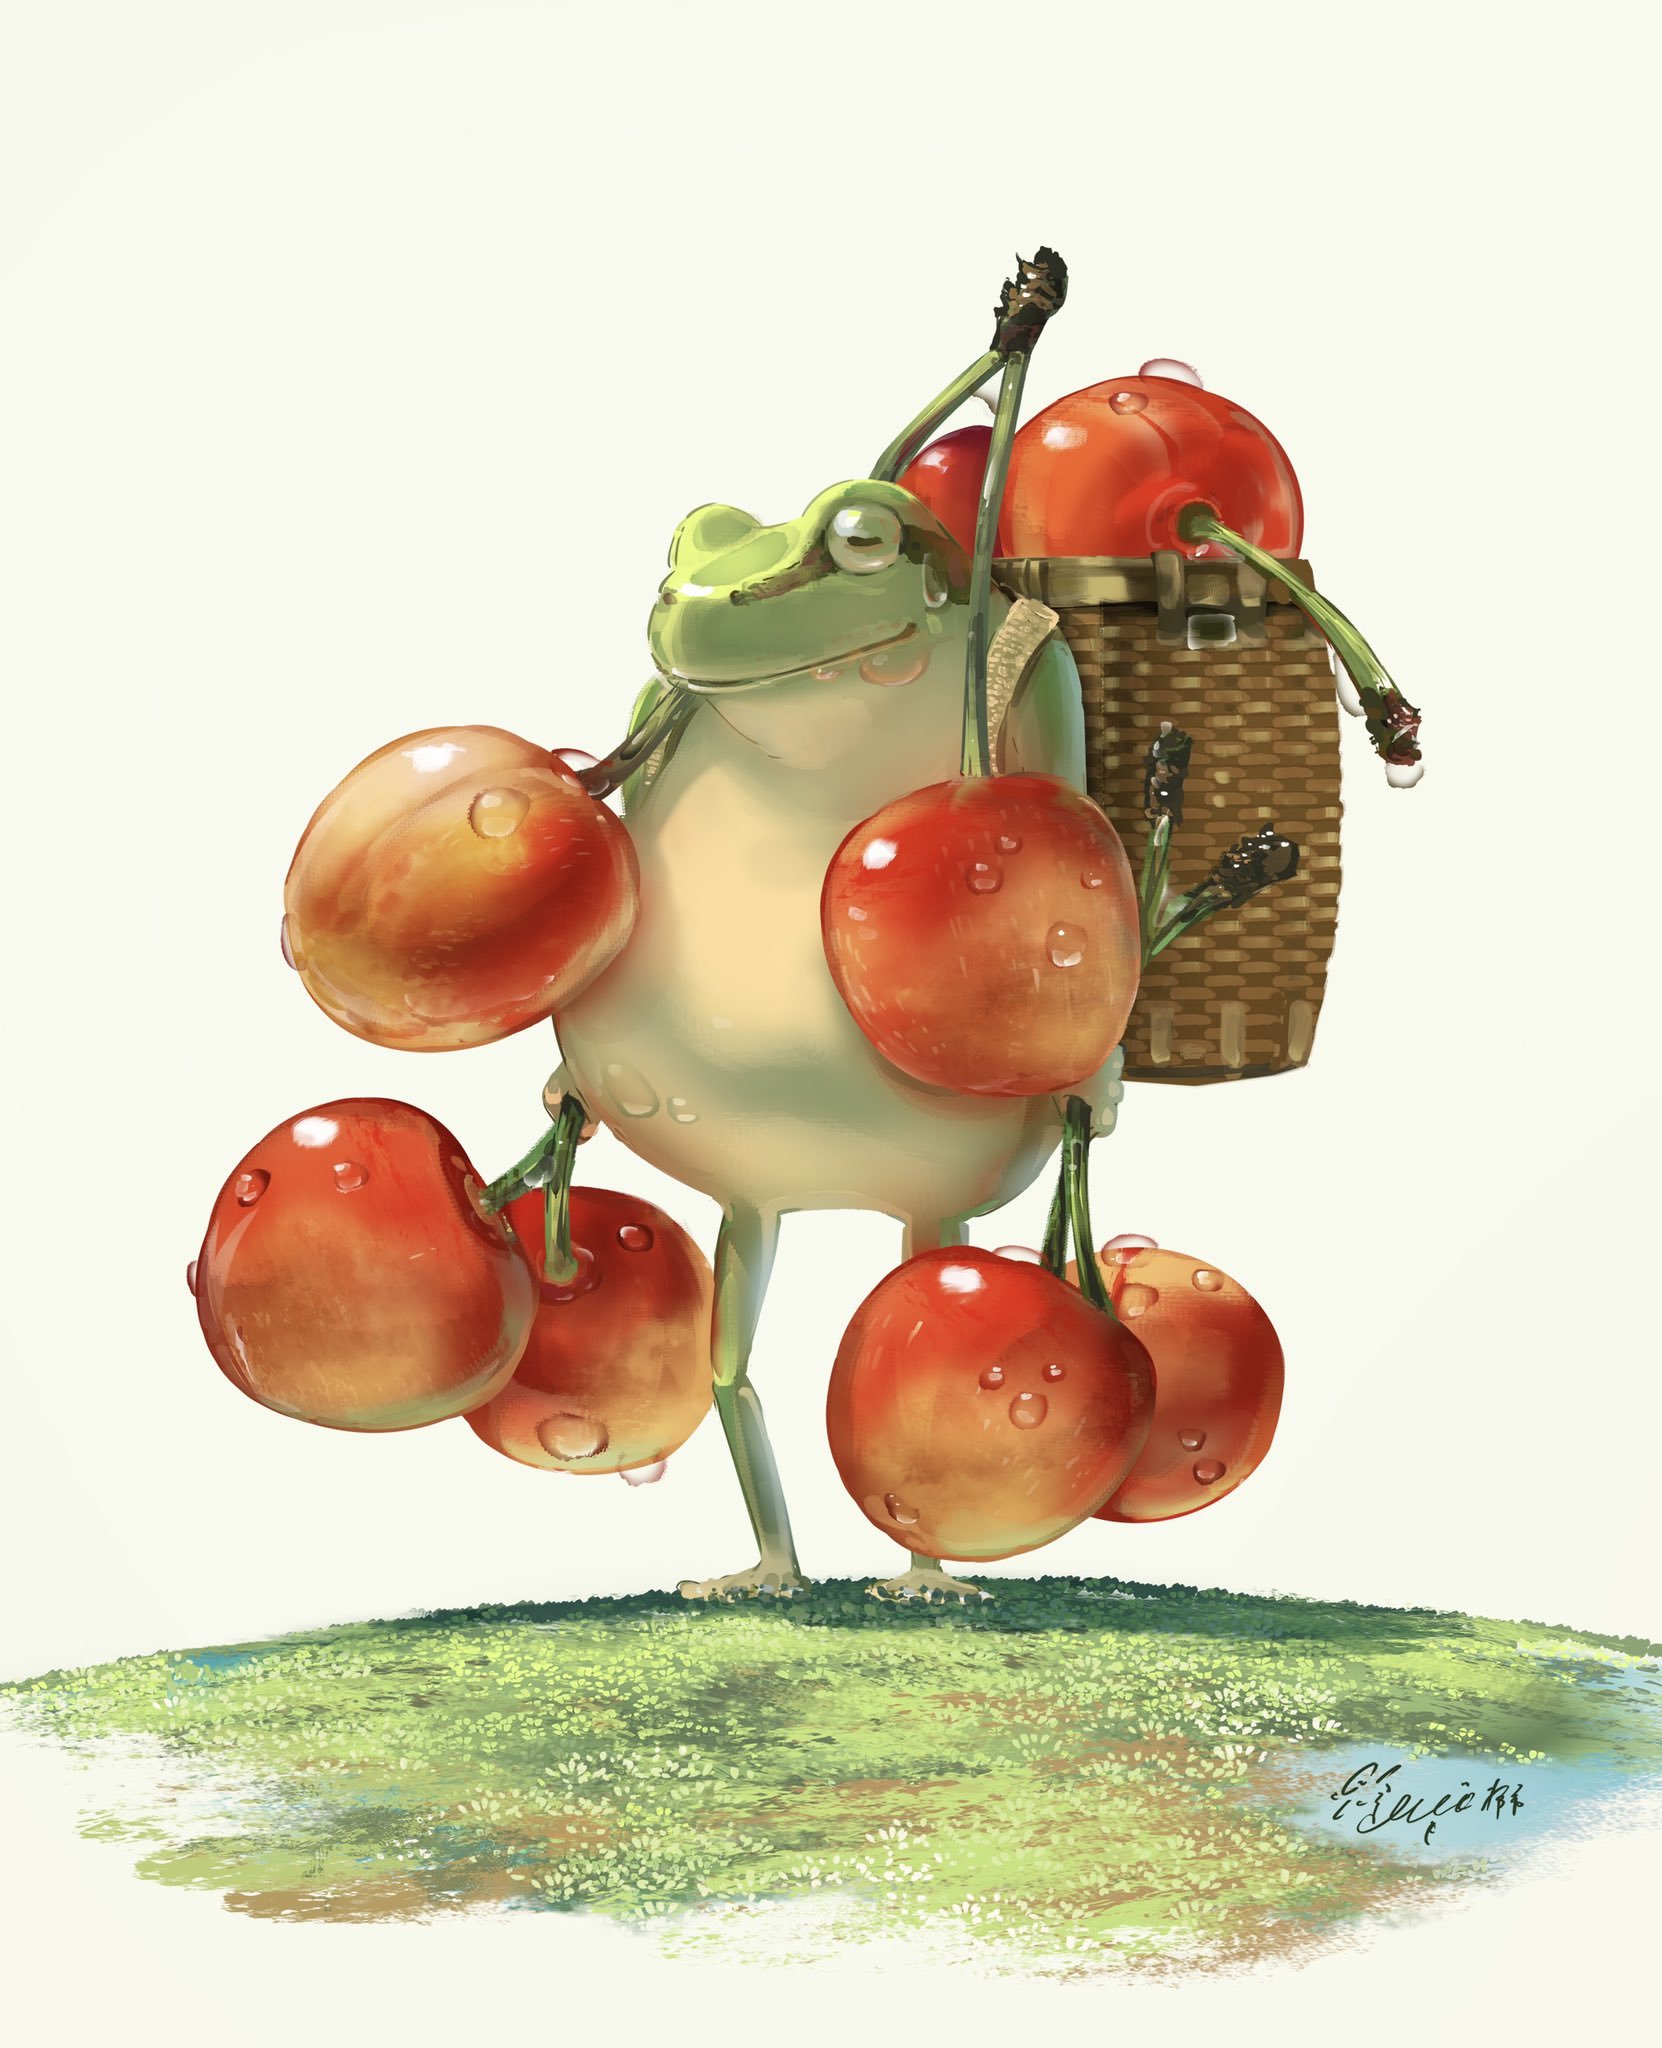 Carries cherries - Art, Drawing, Frogs, Cherries